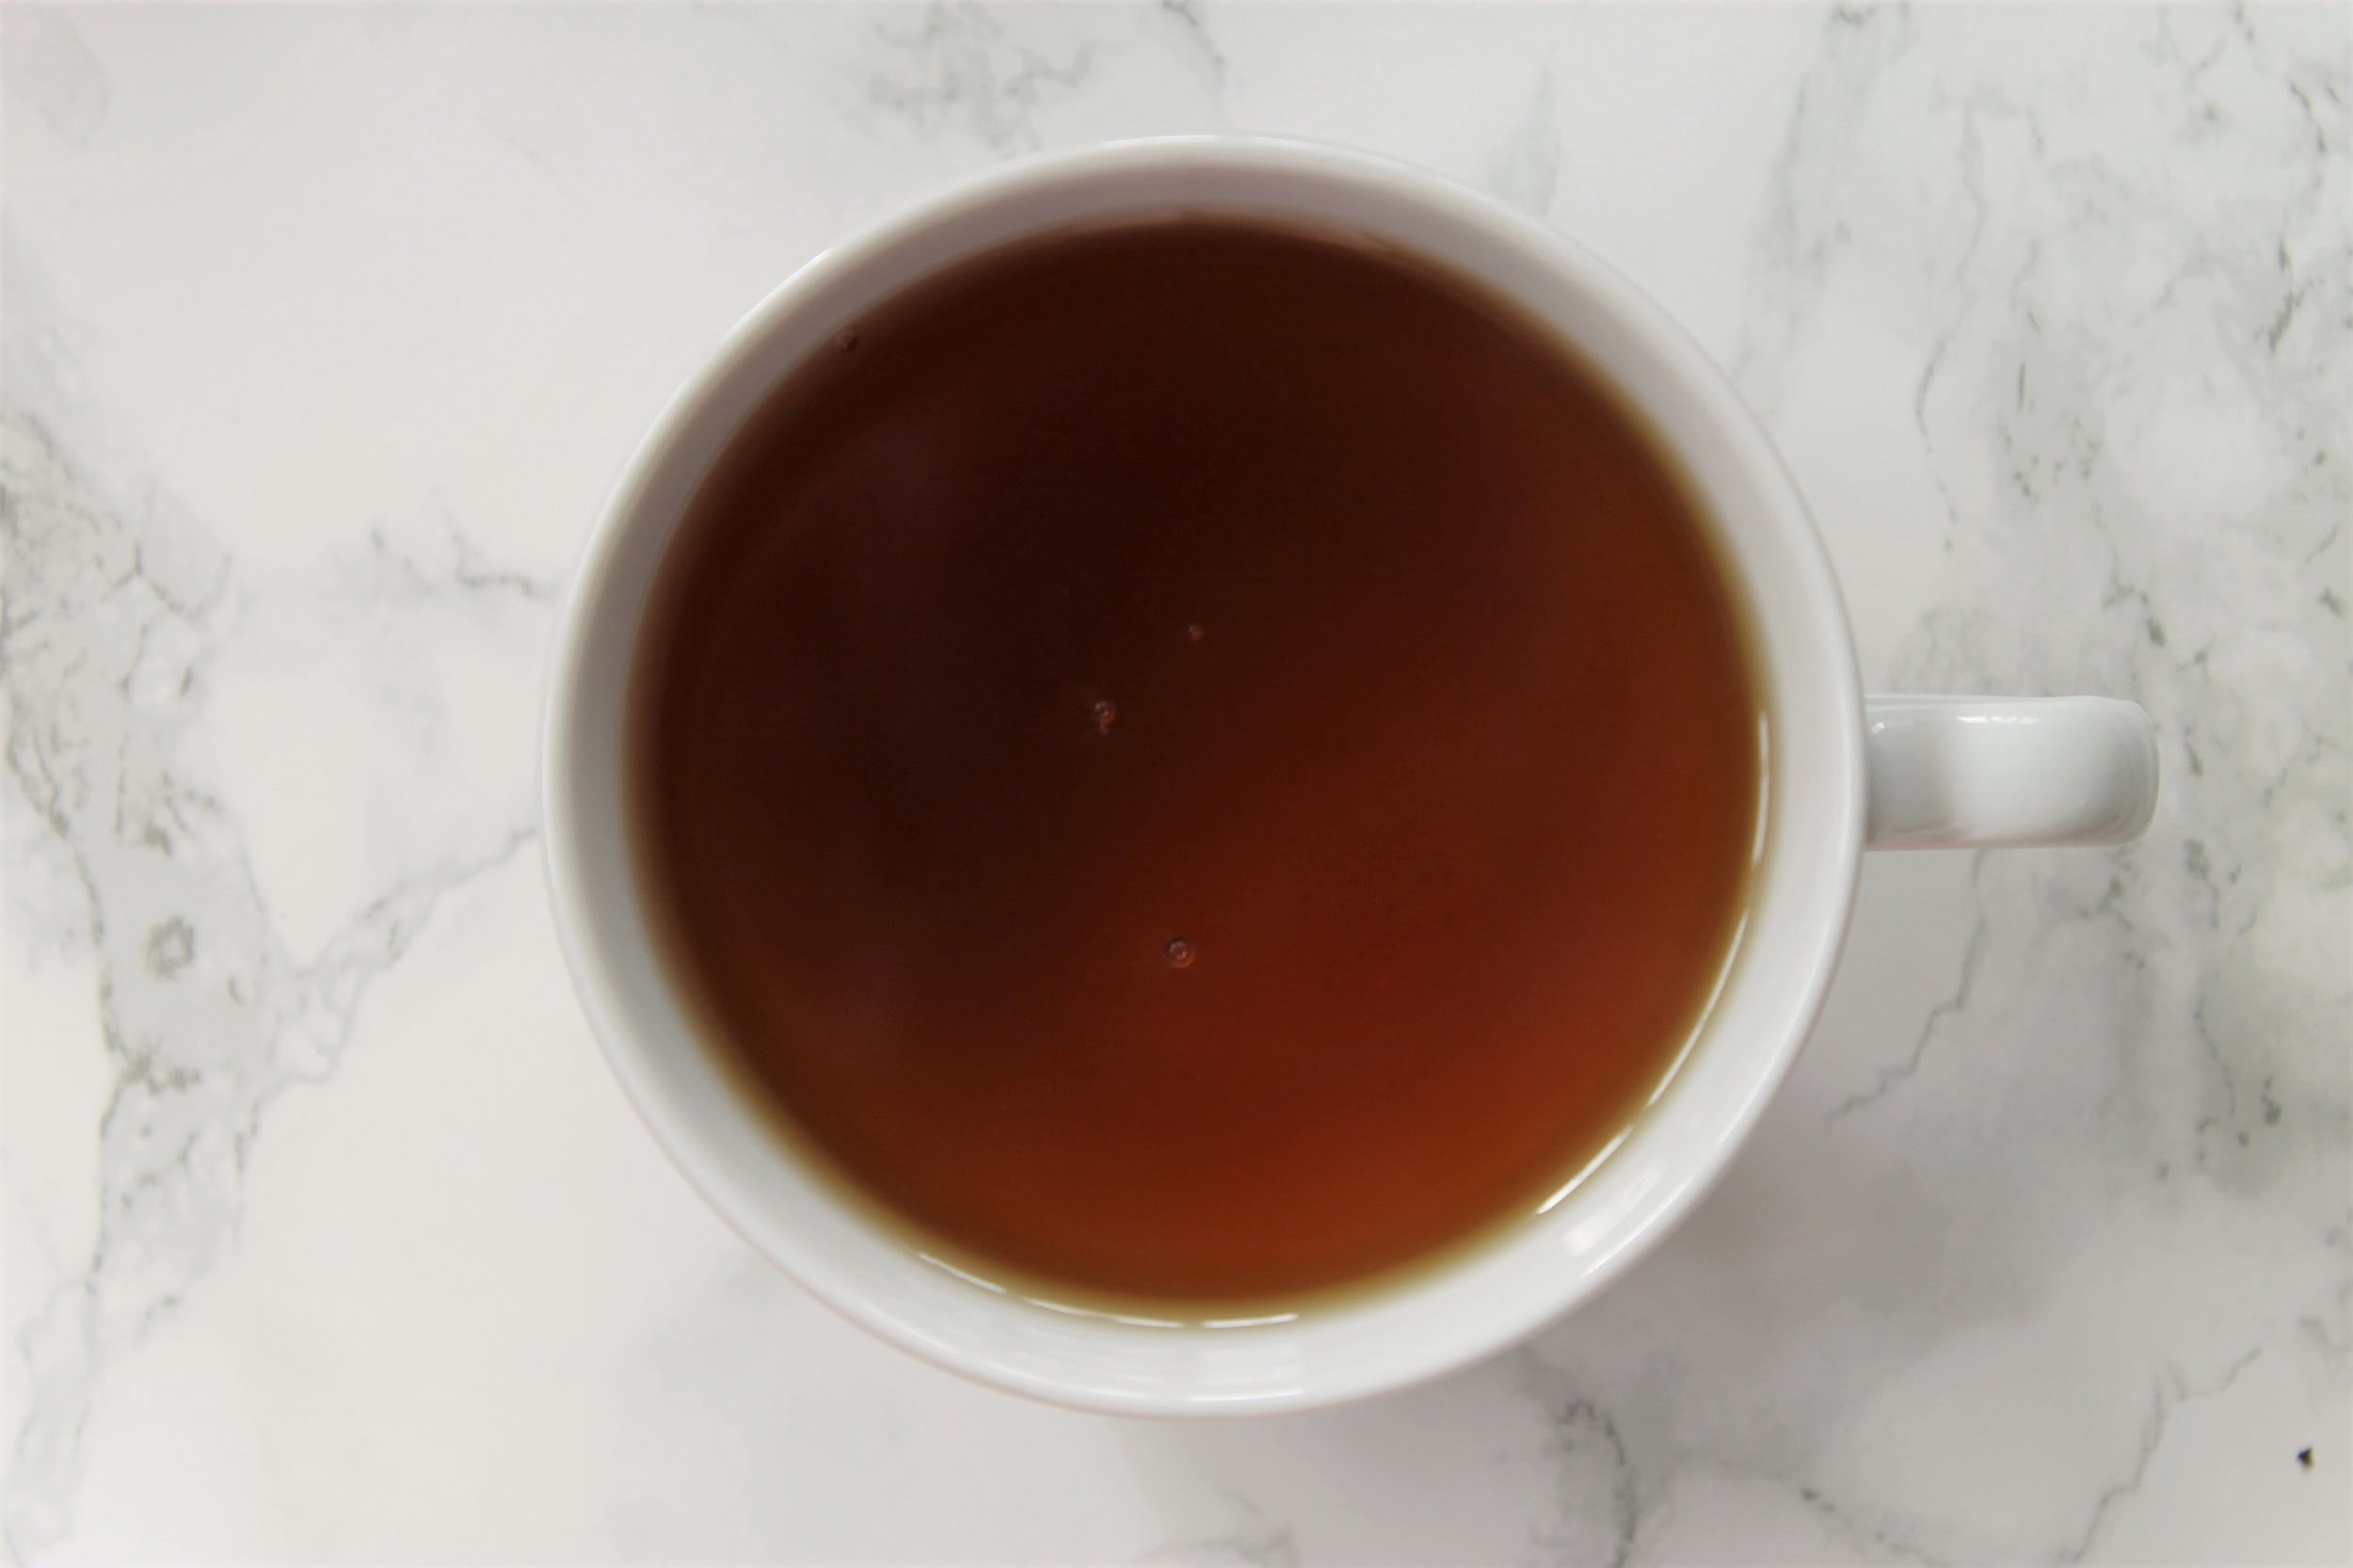 ceylon black tea in white teacup